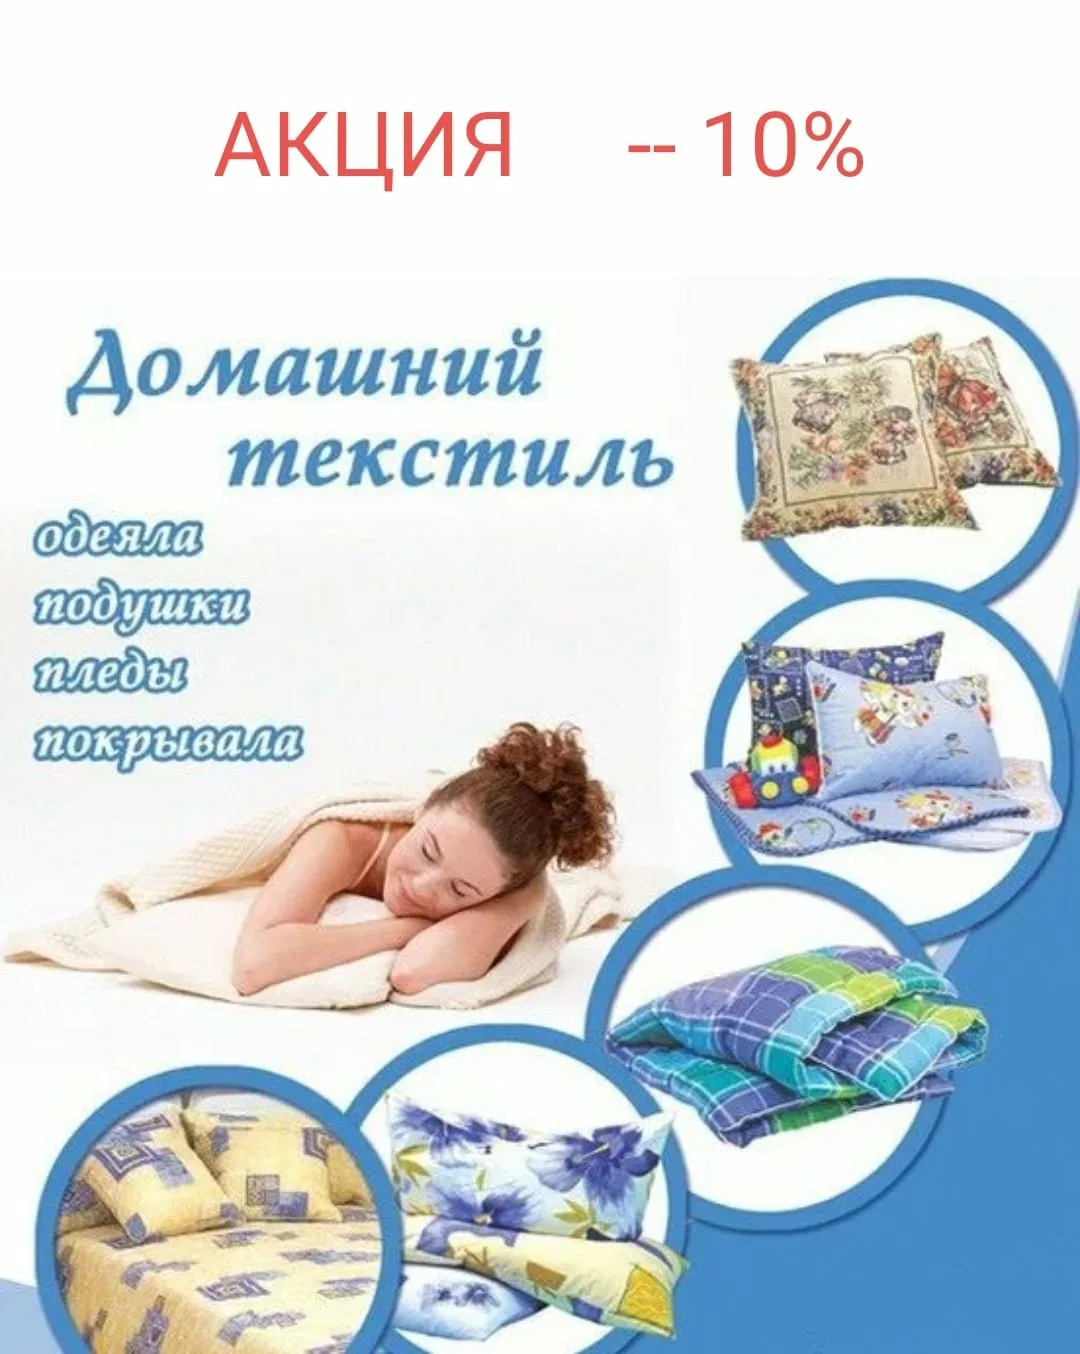 Реклама магазина постельного белья. Рекламный баннер домашнего текстиля. Реклама магазина текстиля. Домашний текстиль реклама. Постелька слова